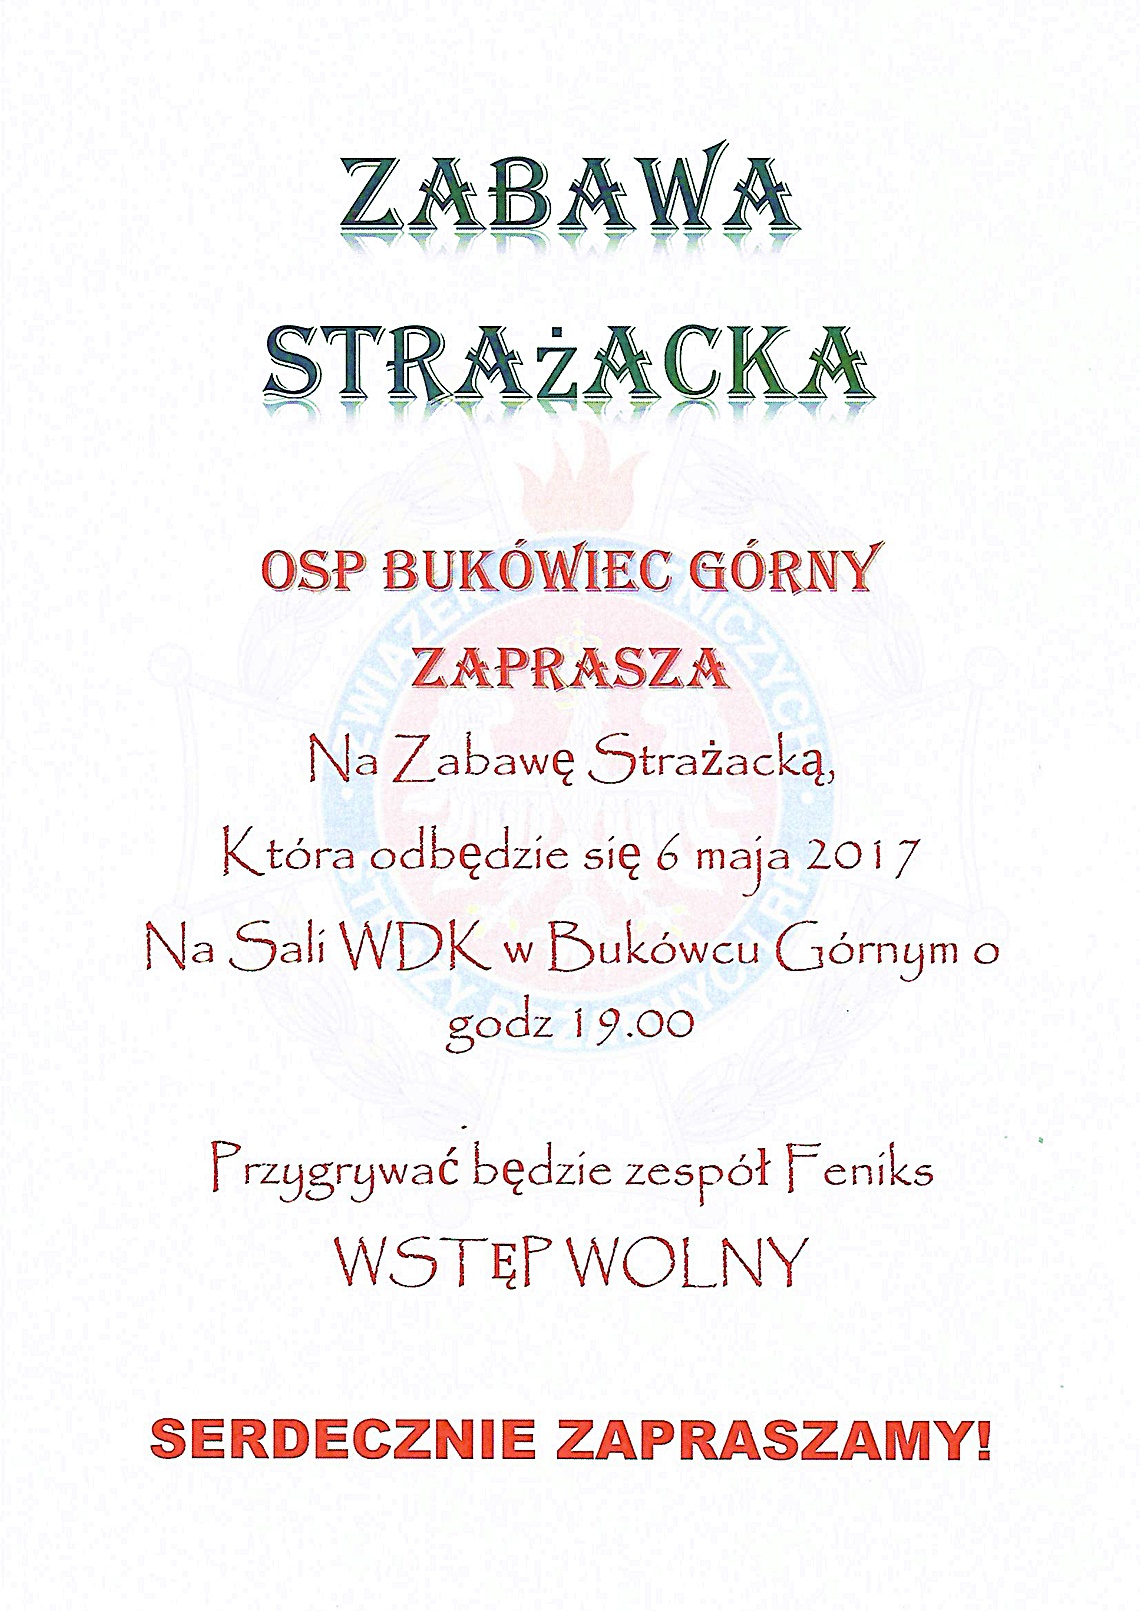 Zabawa Strażacka - zaproszenie